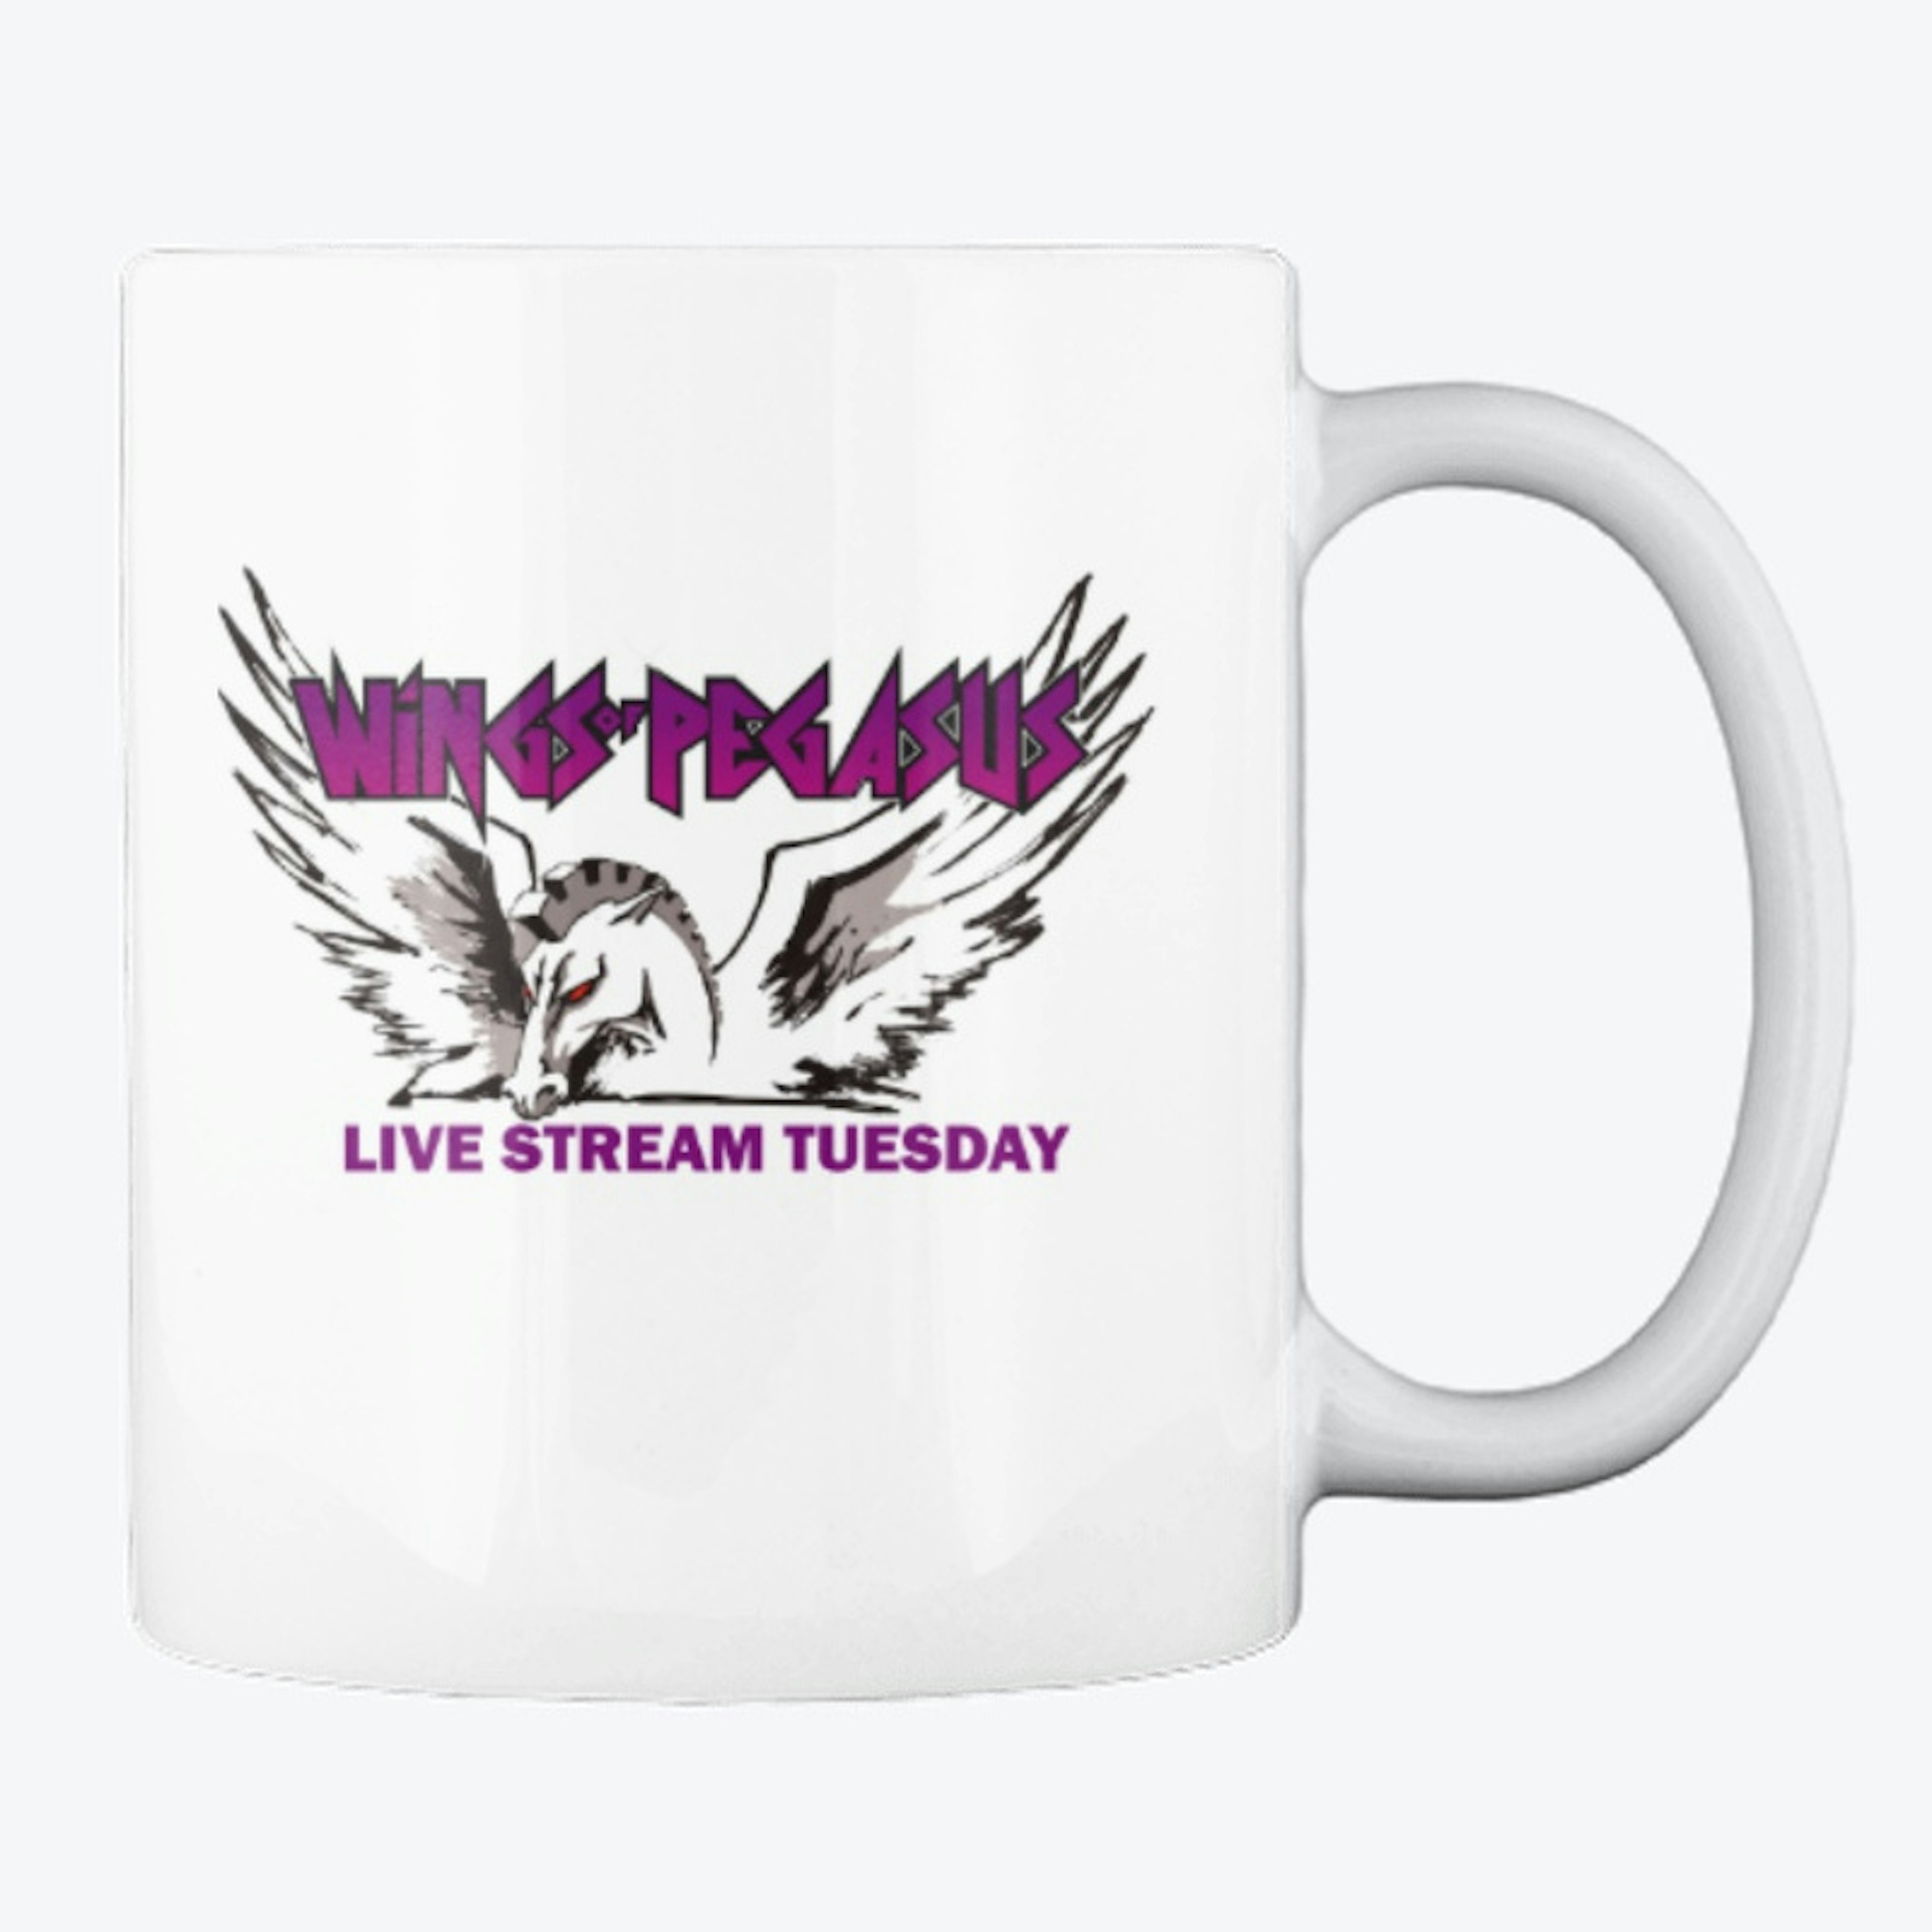 'Live Stream Tuesday' Mug